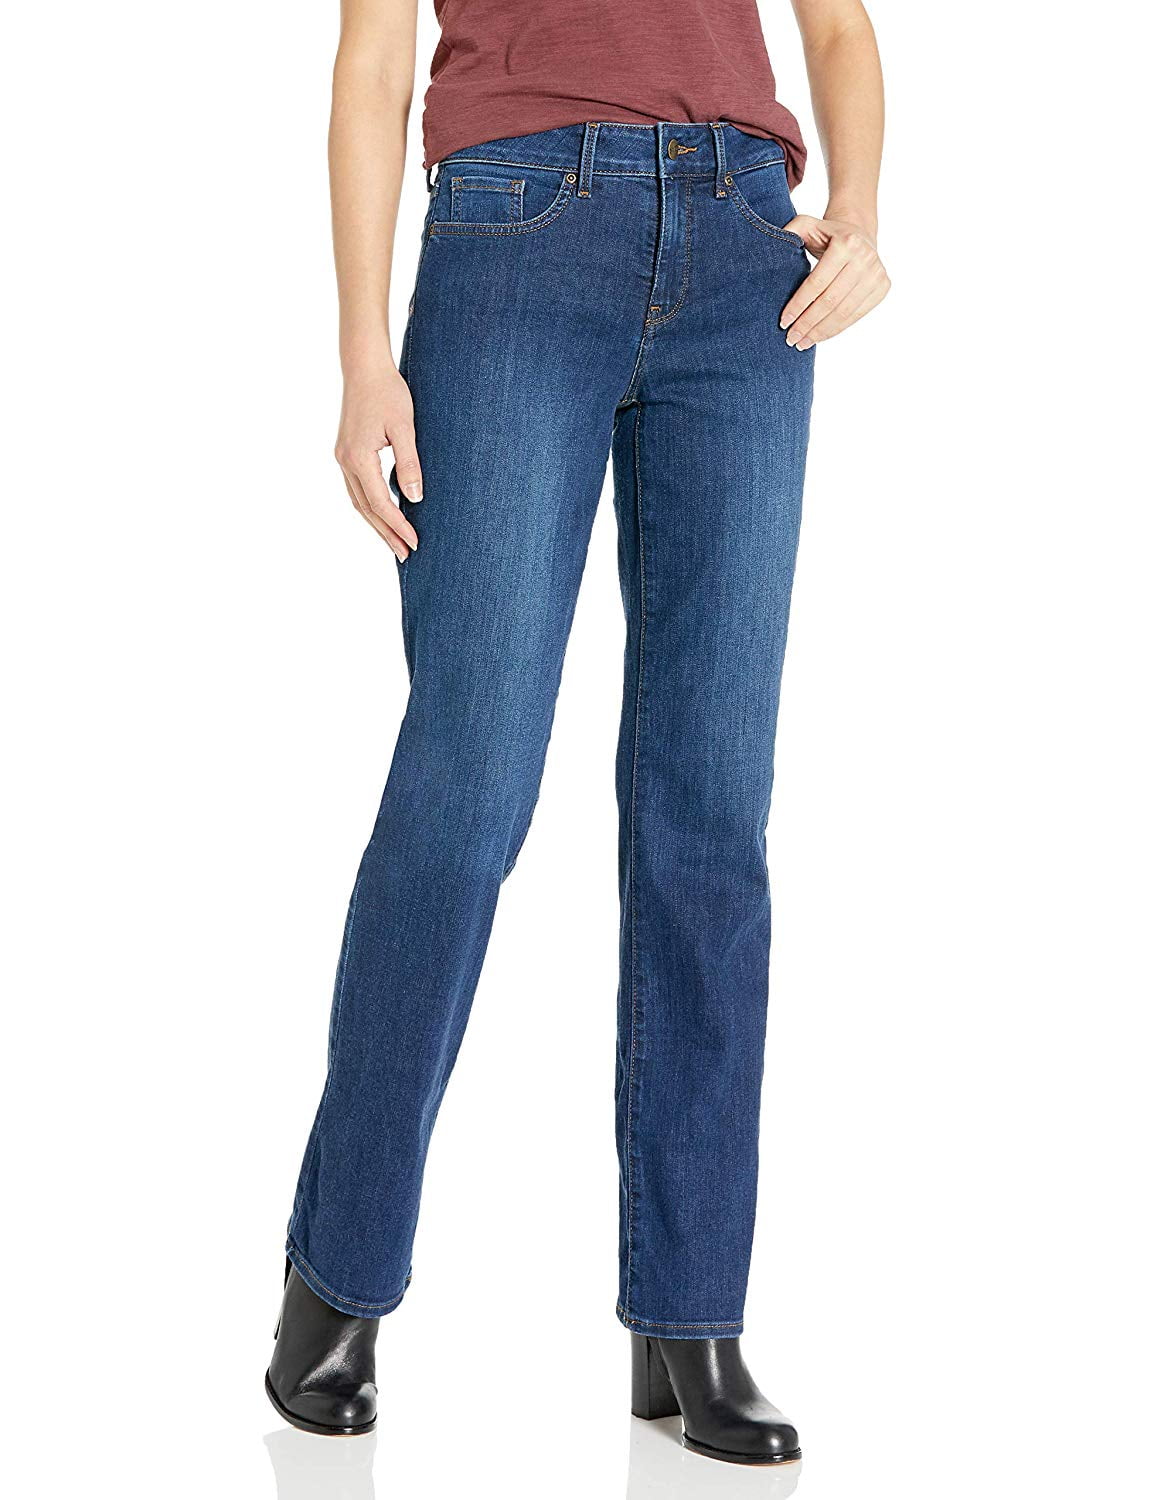 nydj women's marilyn straight leg jeans